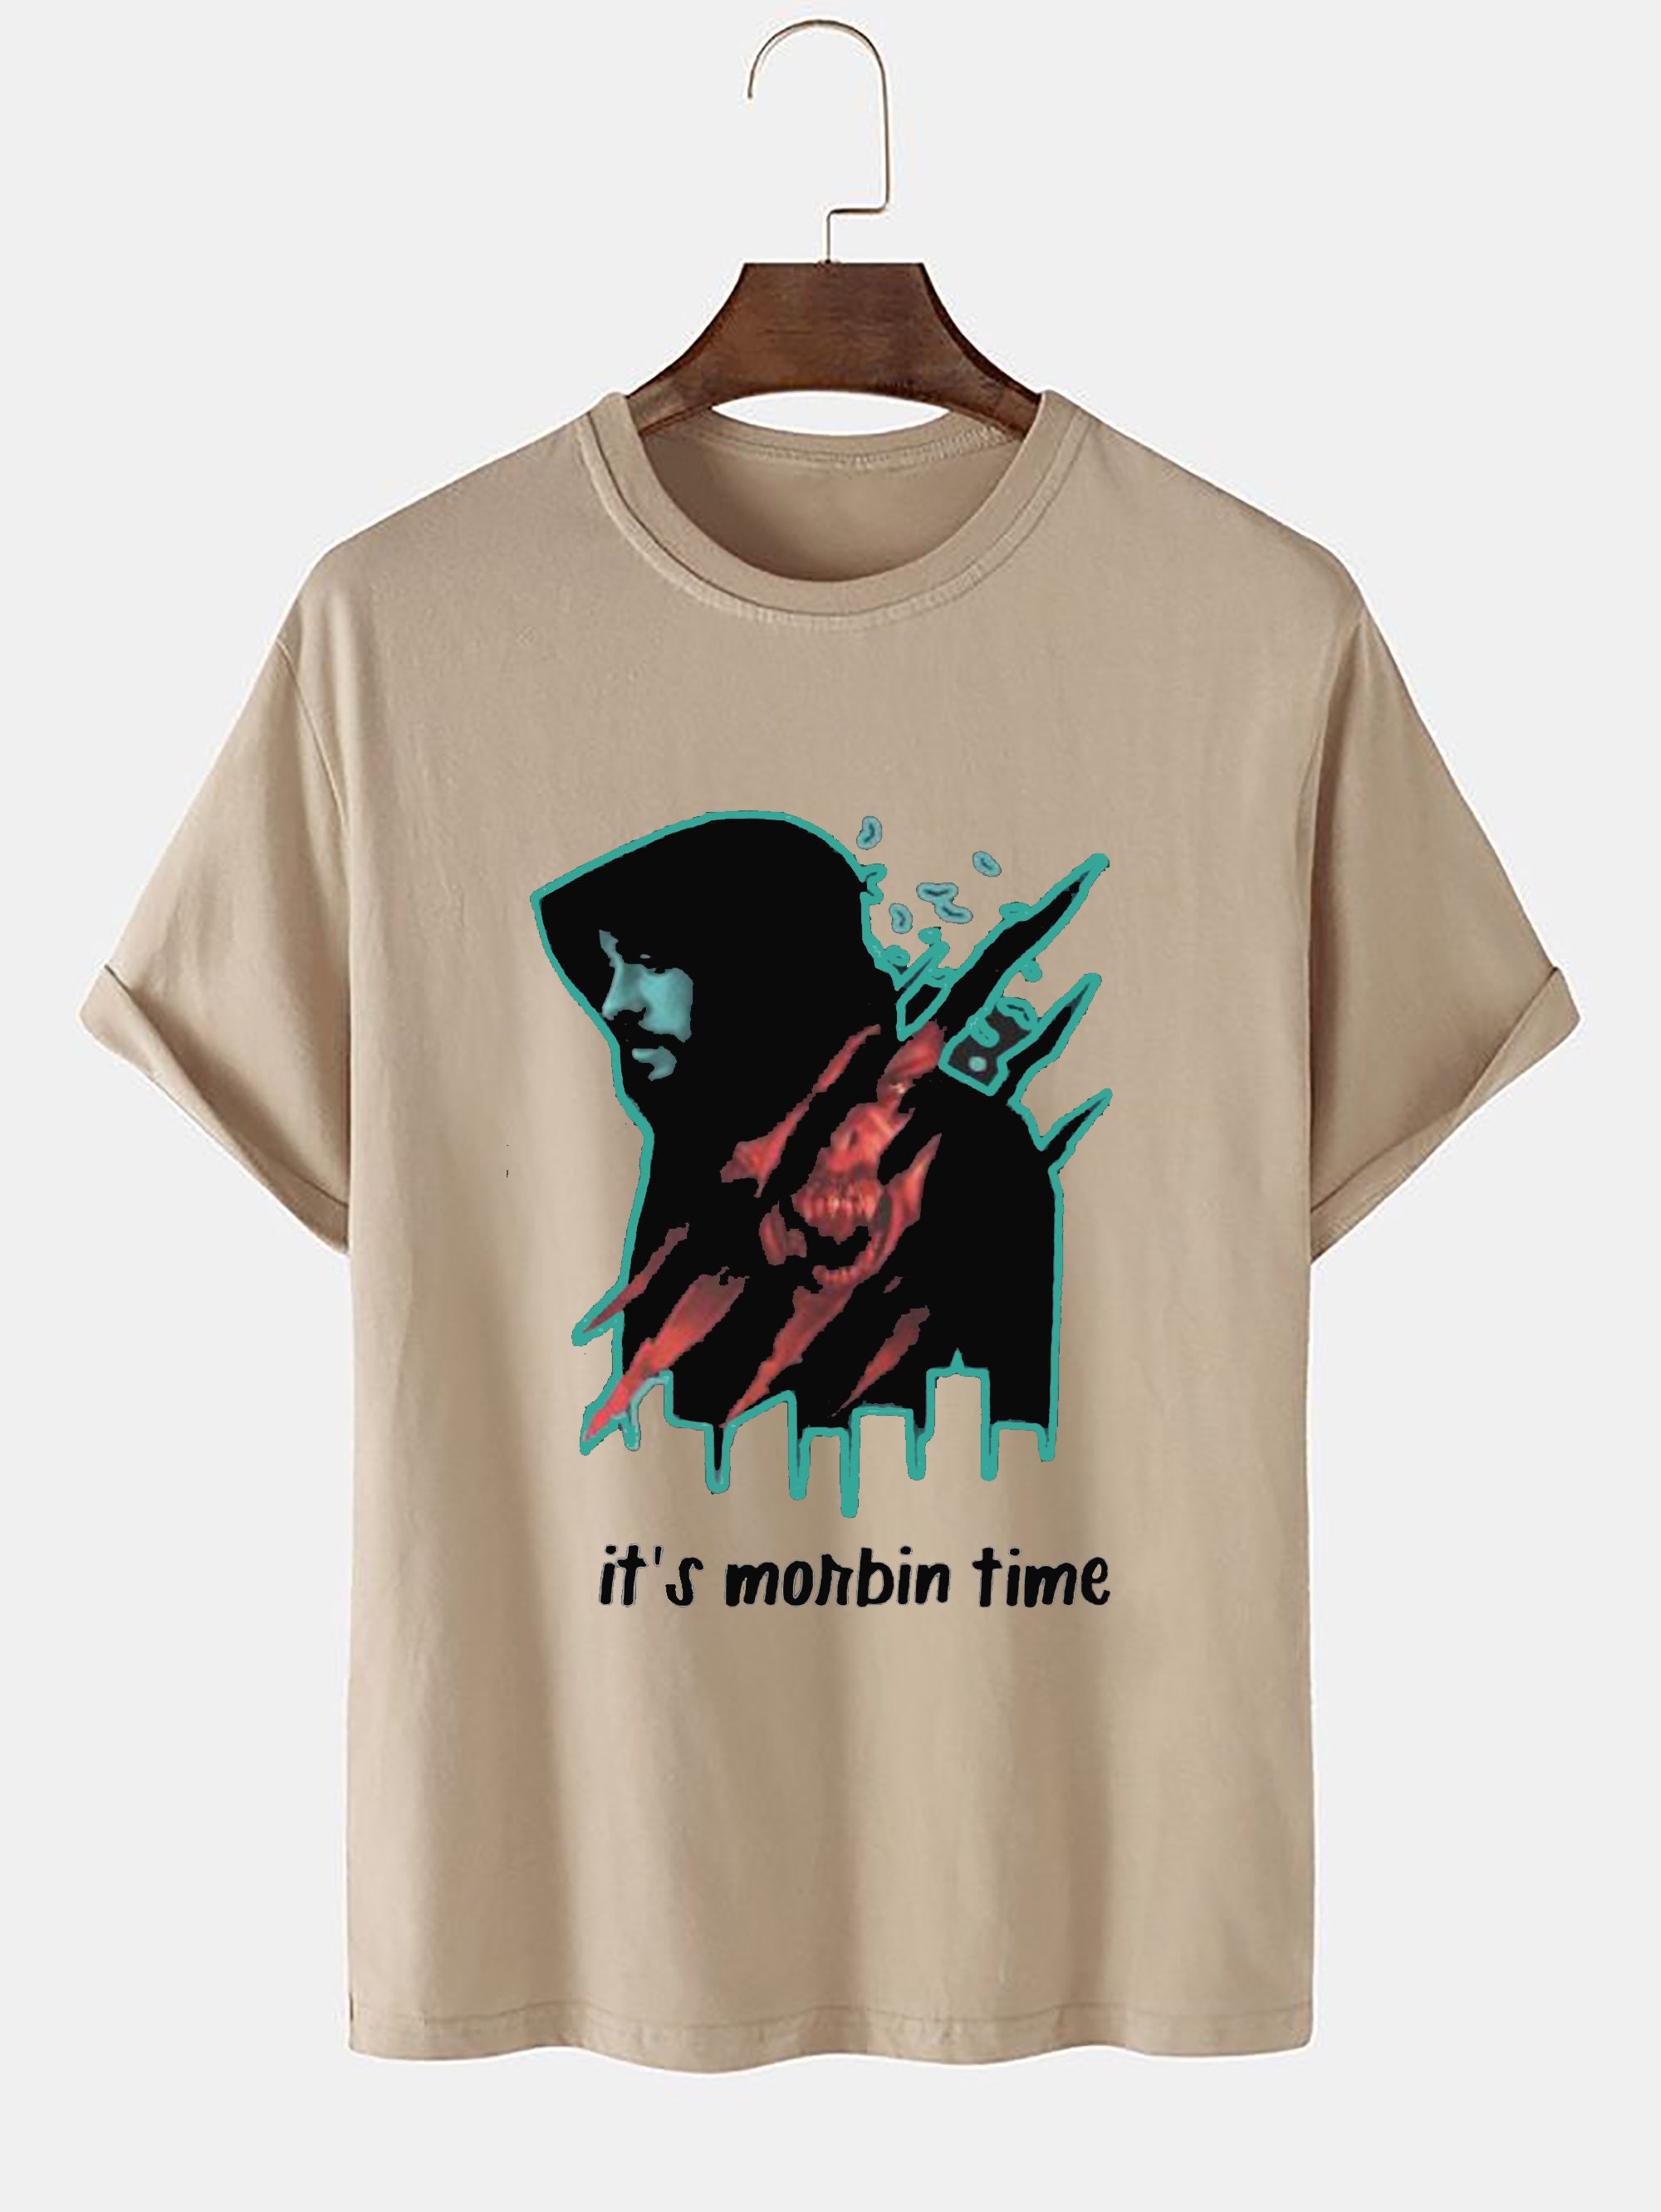 It's Morbin Time T-Shirt, Morbius Meme Shirt, Morbius T-Shirt